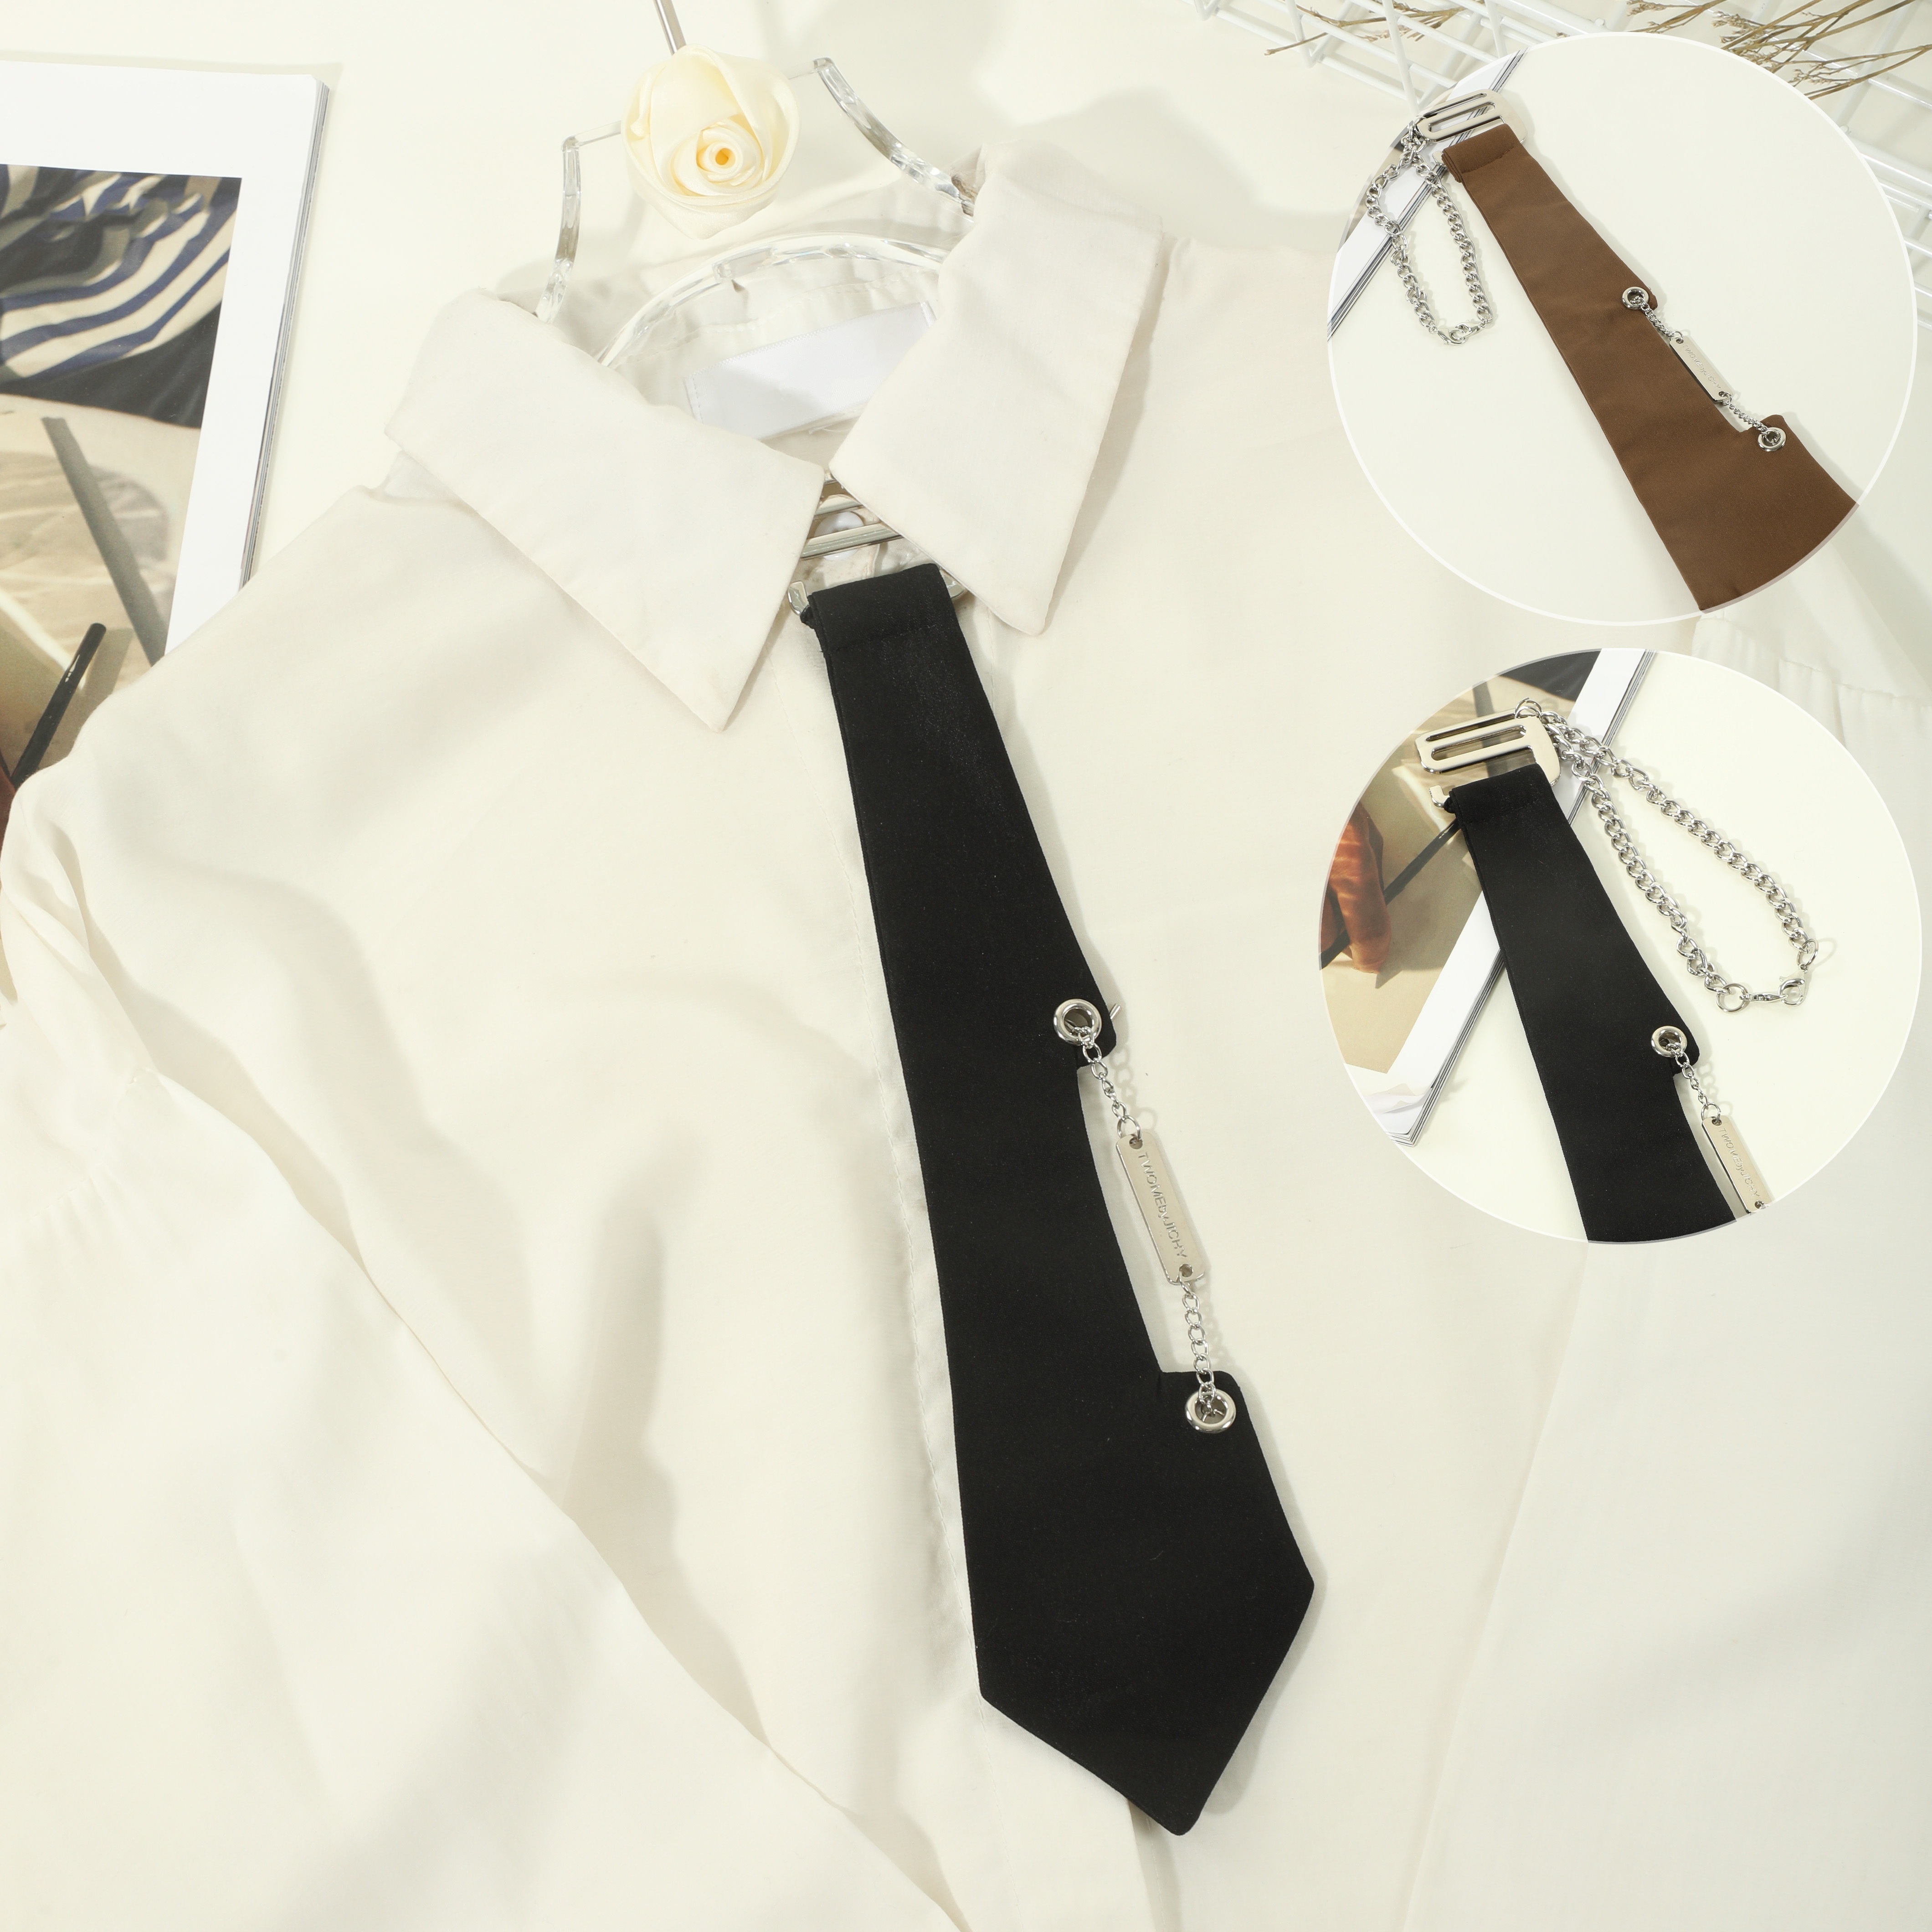 

Casual Metal Buckle Chain Tie Women's Monochrome Detachable Bowtie Daily Matching Jk Uniform Necktie